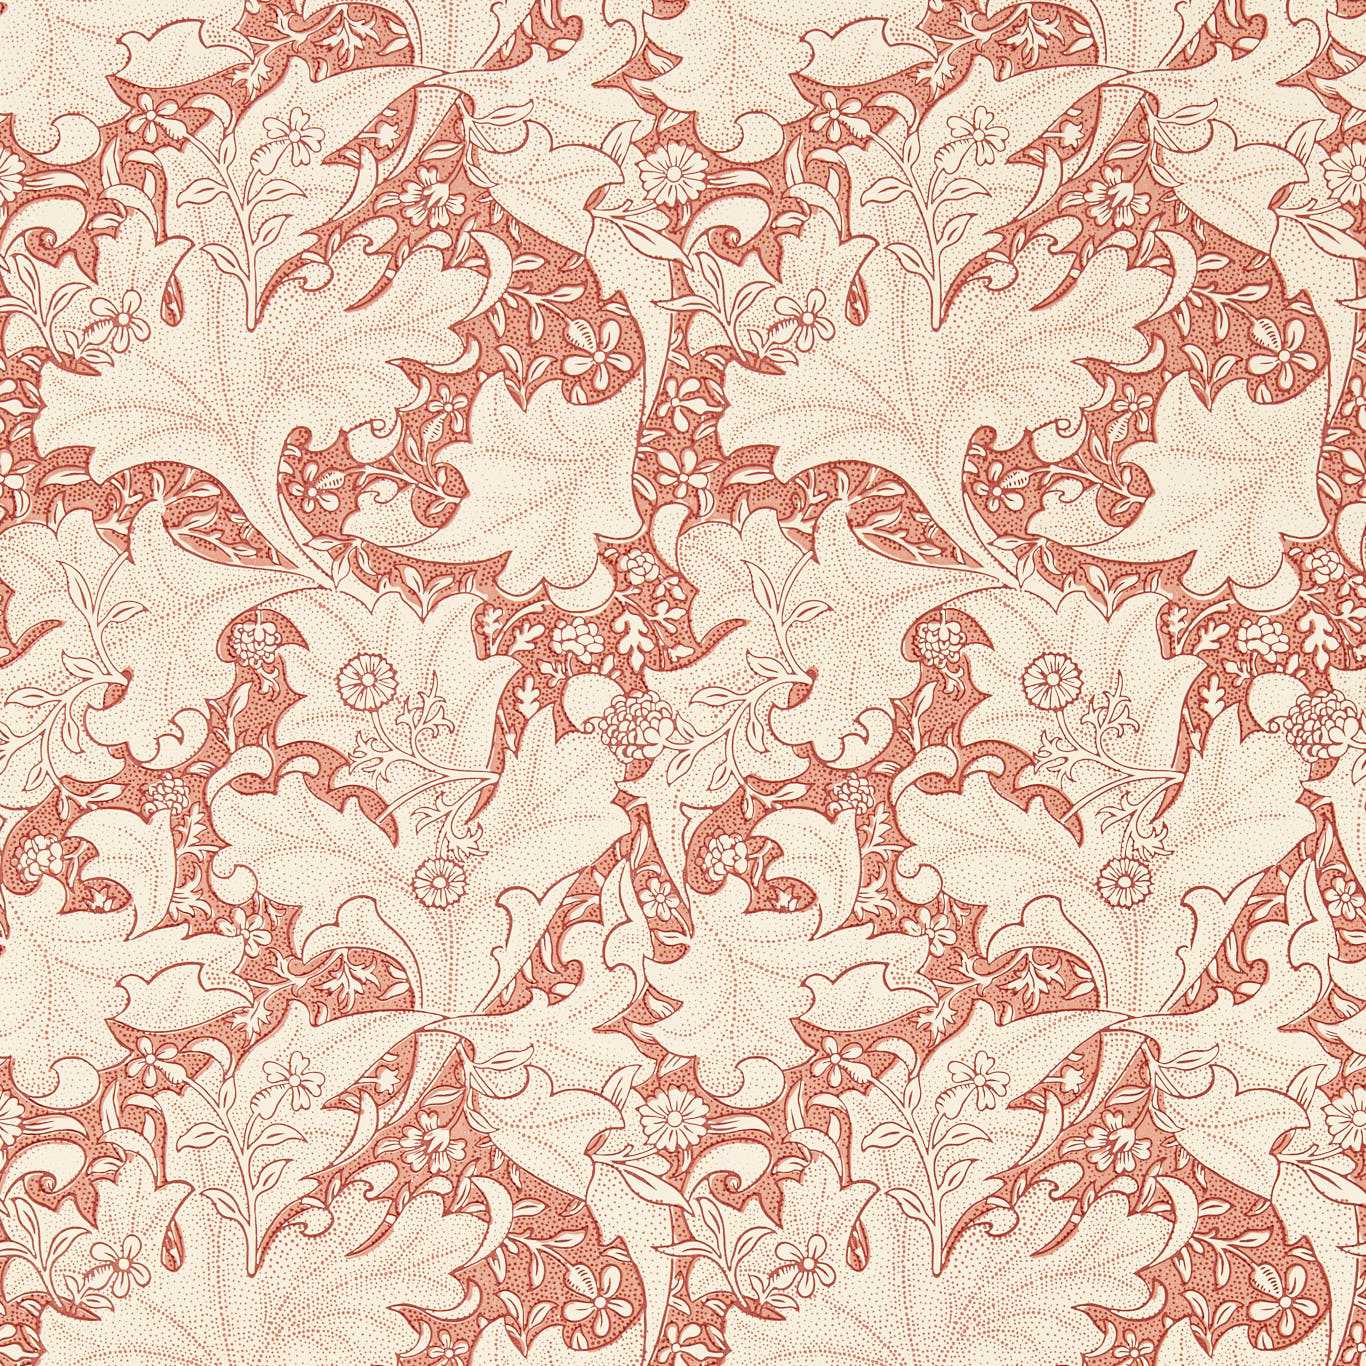 Wallflower Wallpaper - Chrysanthemum Pink - MEWW217188 - Morris & Co - Emmery Walkers - Morris Wallpaper